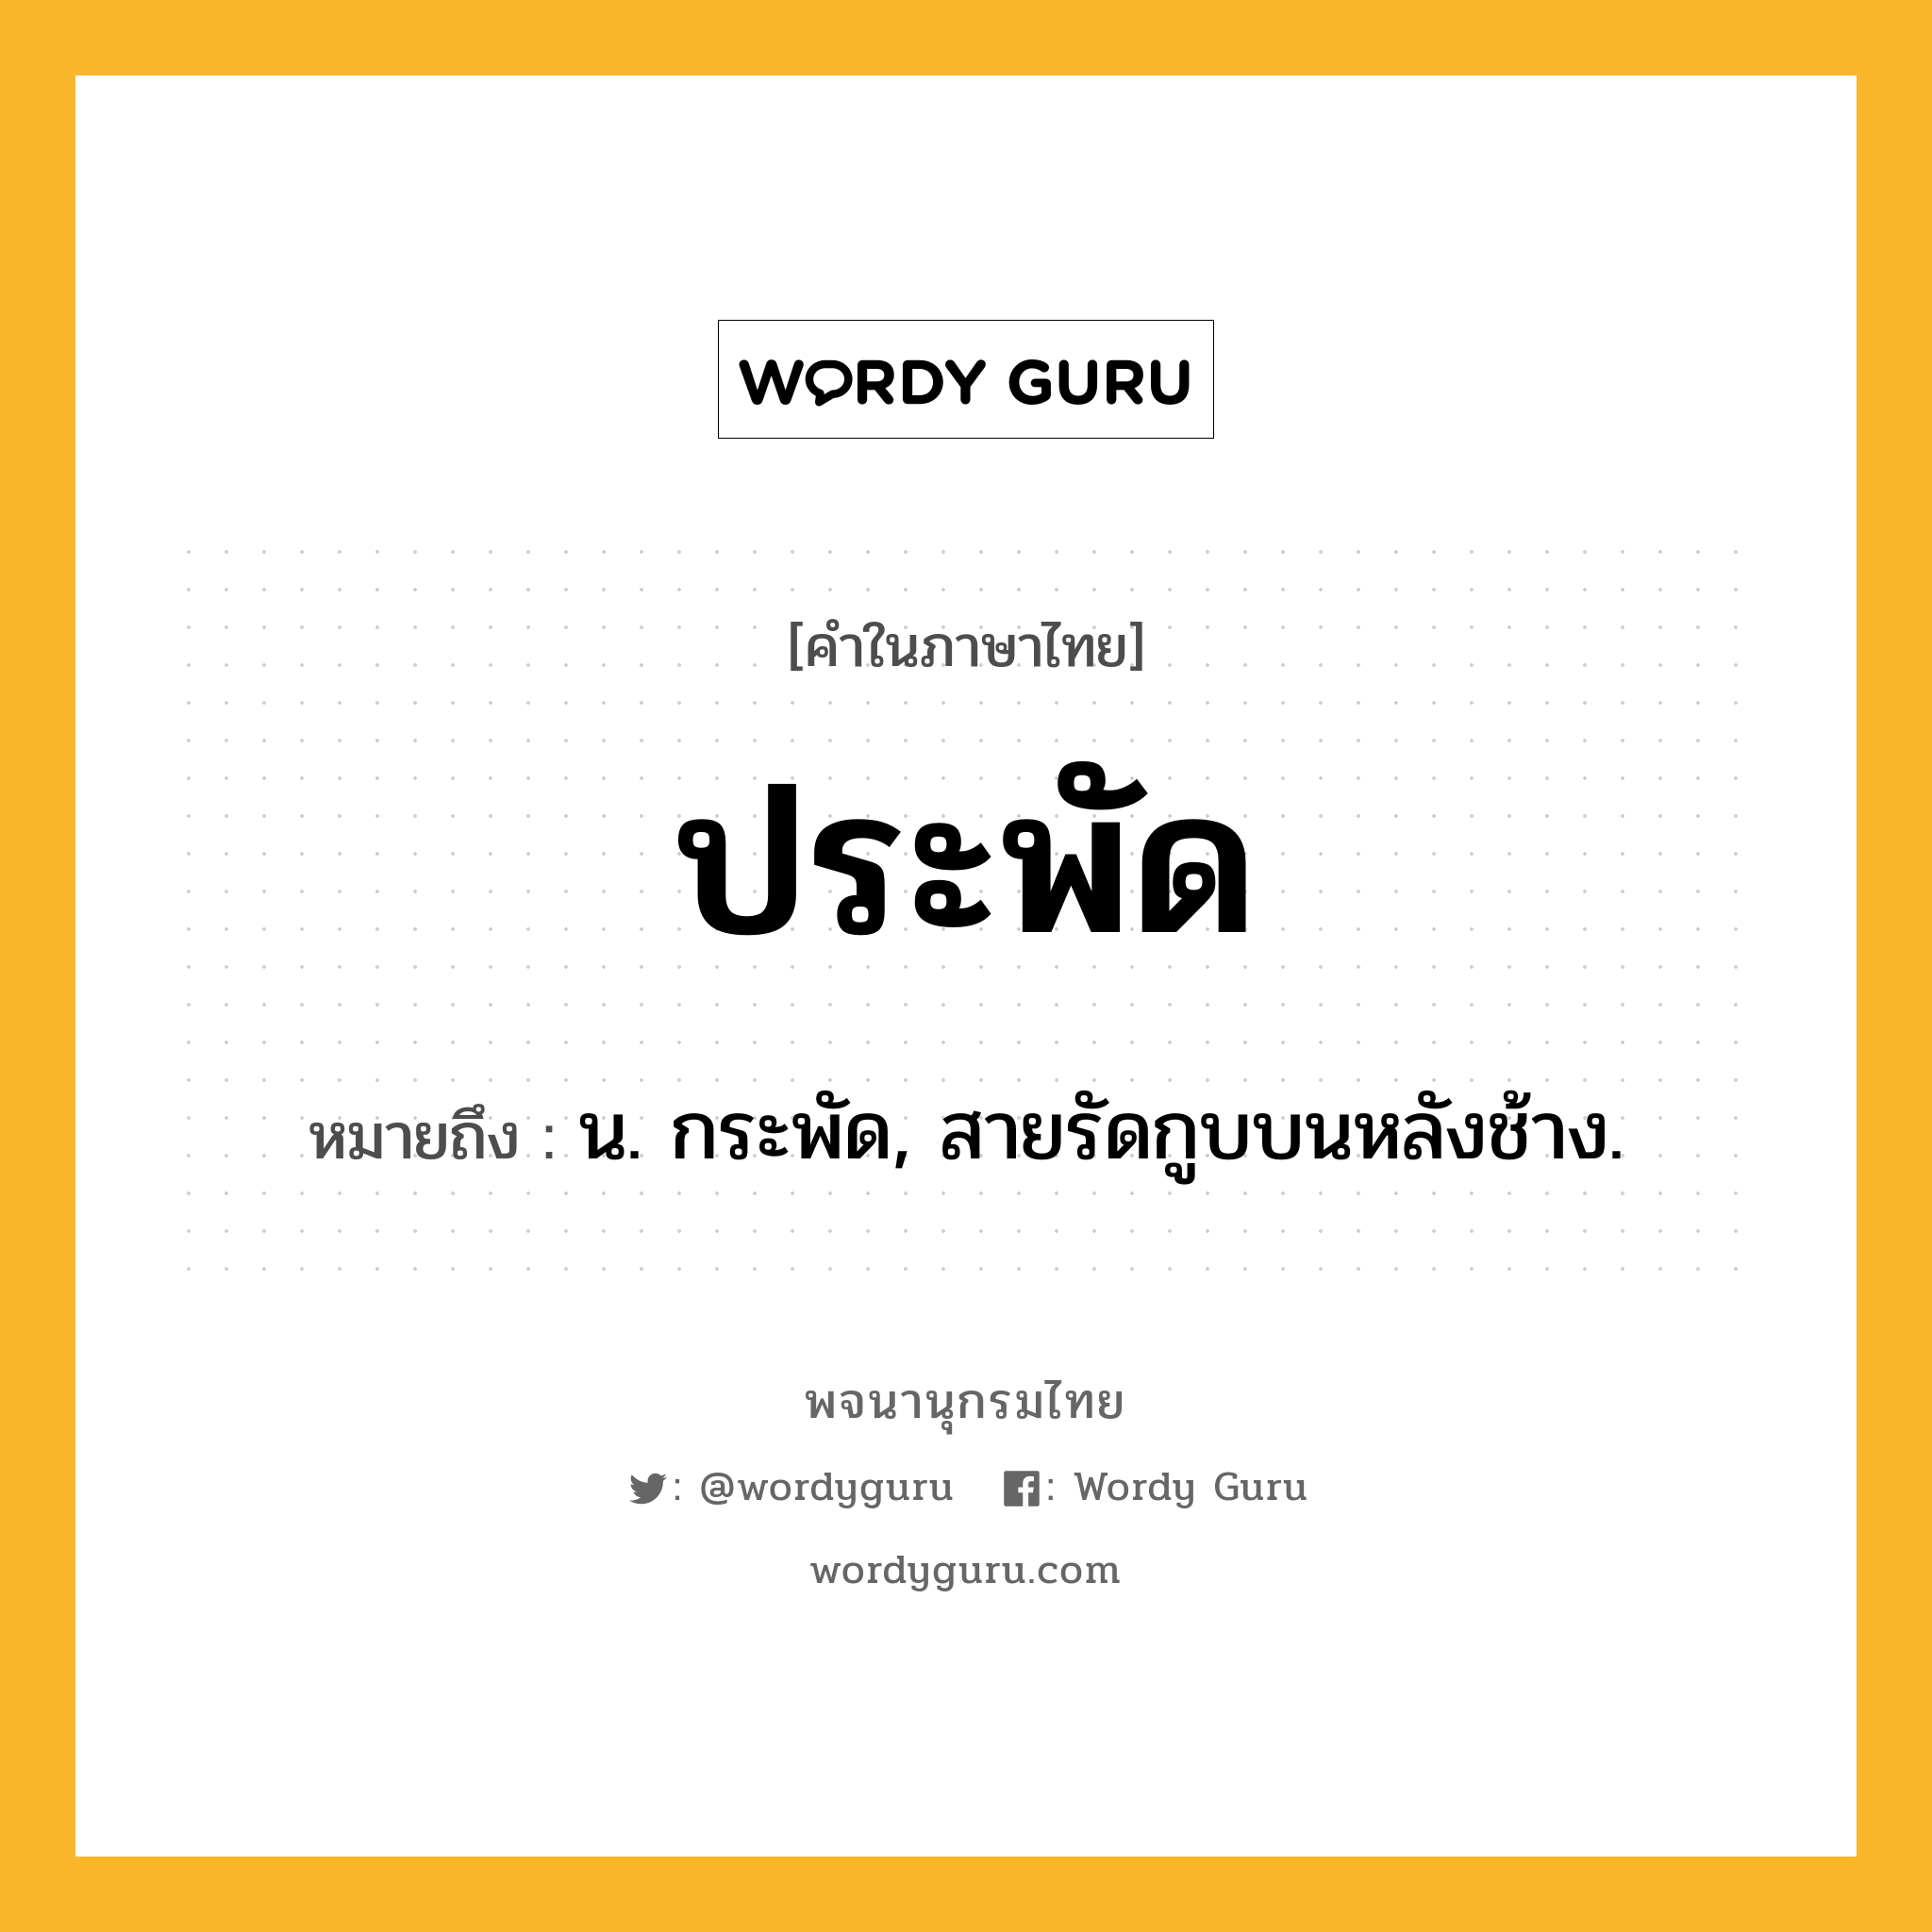 ประพัด ความหมาย หมายถึงอะไร?, คำในภาษาไทย ประพัด หมายถึง น. กระพัด, สายรัดกูบบนหลังช้าง.